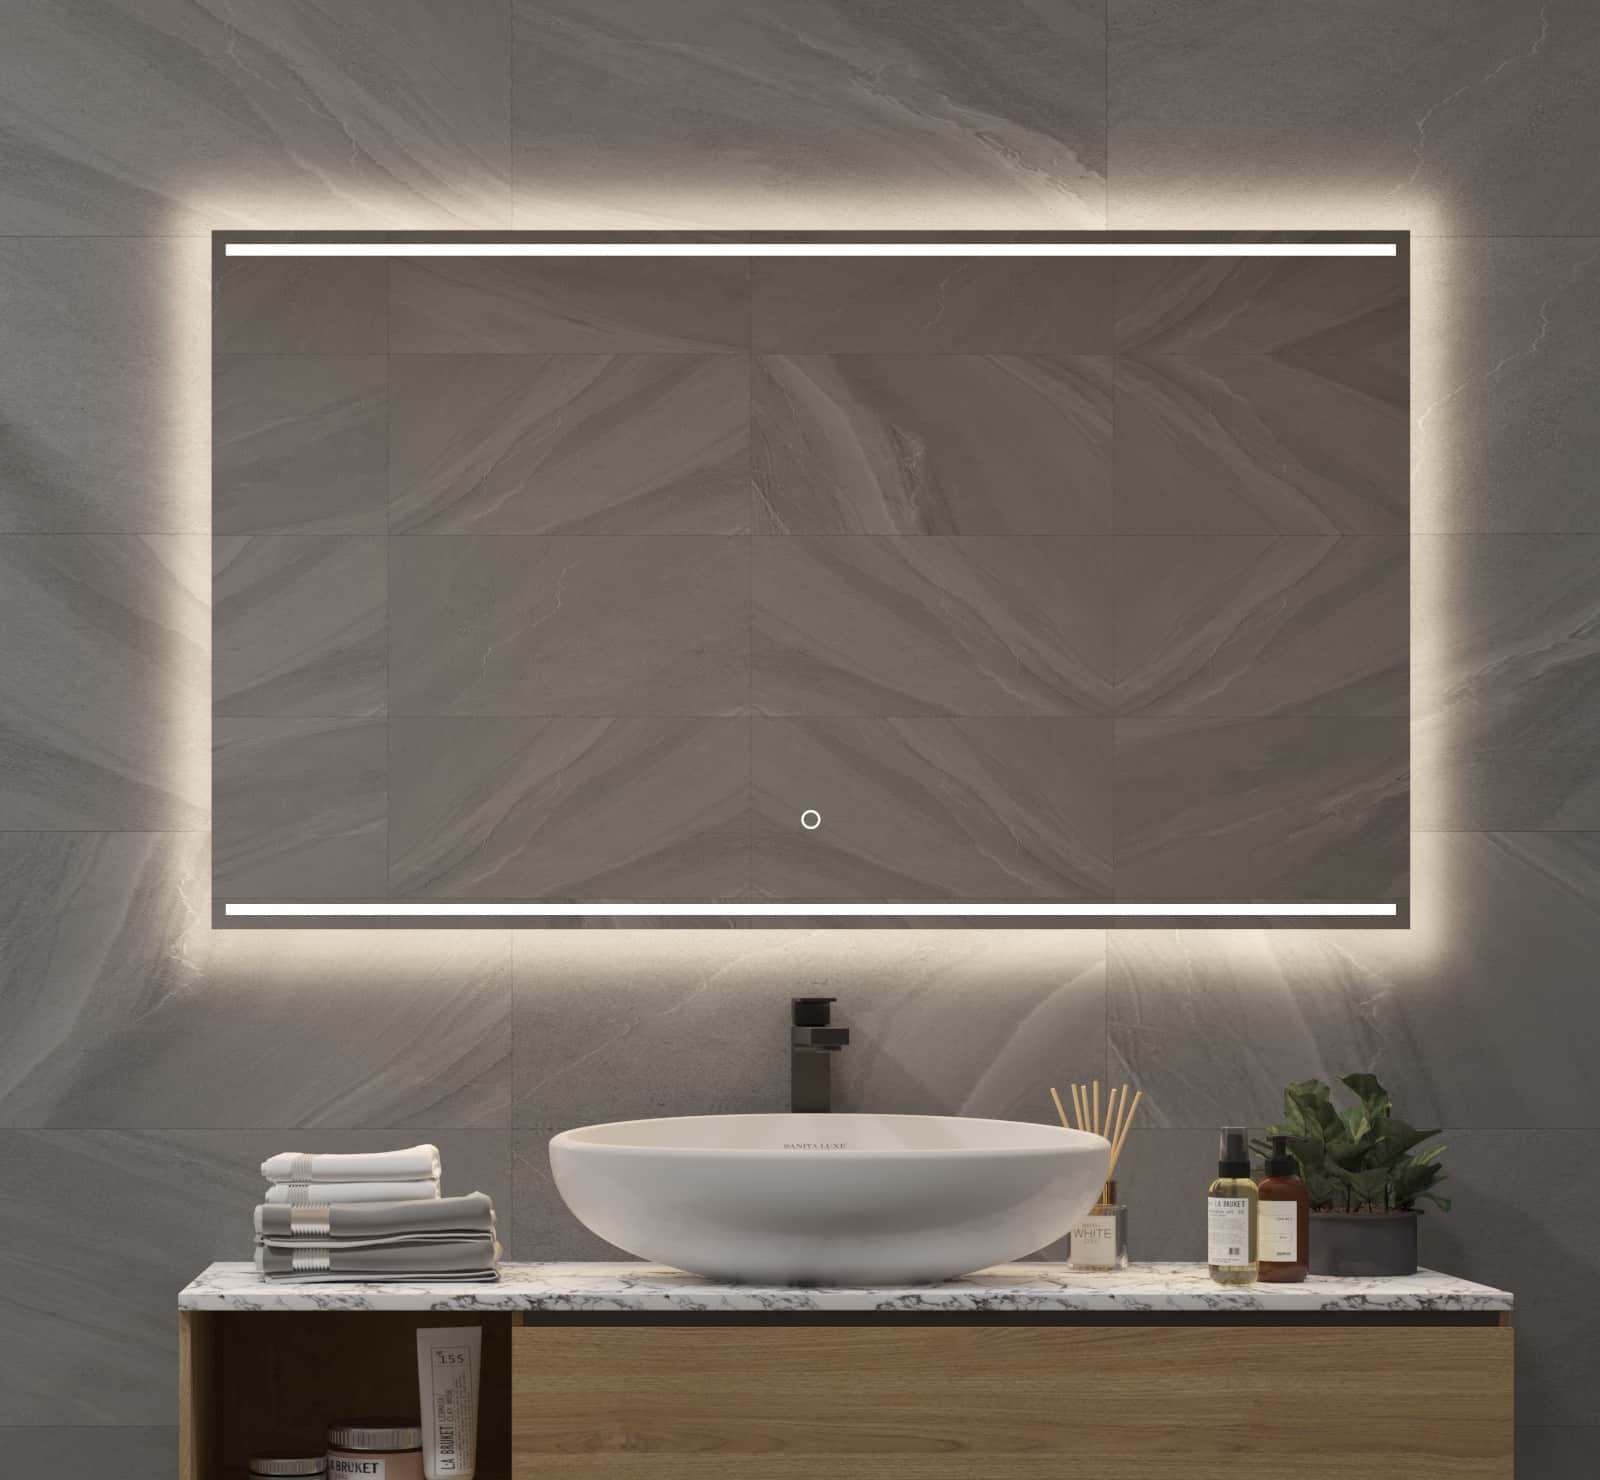 Badkamer spiegel met fraaie designer verlichting